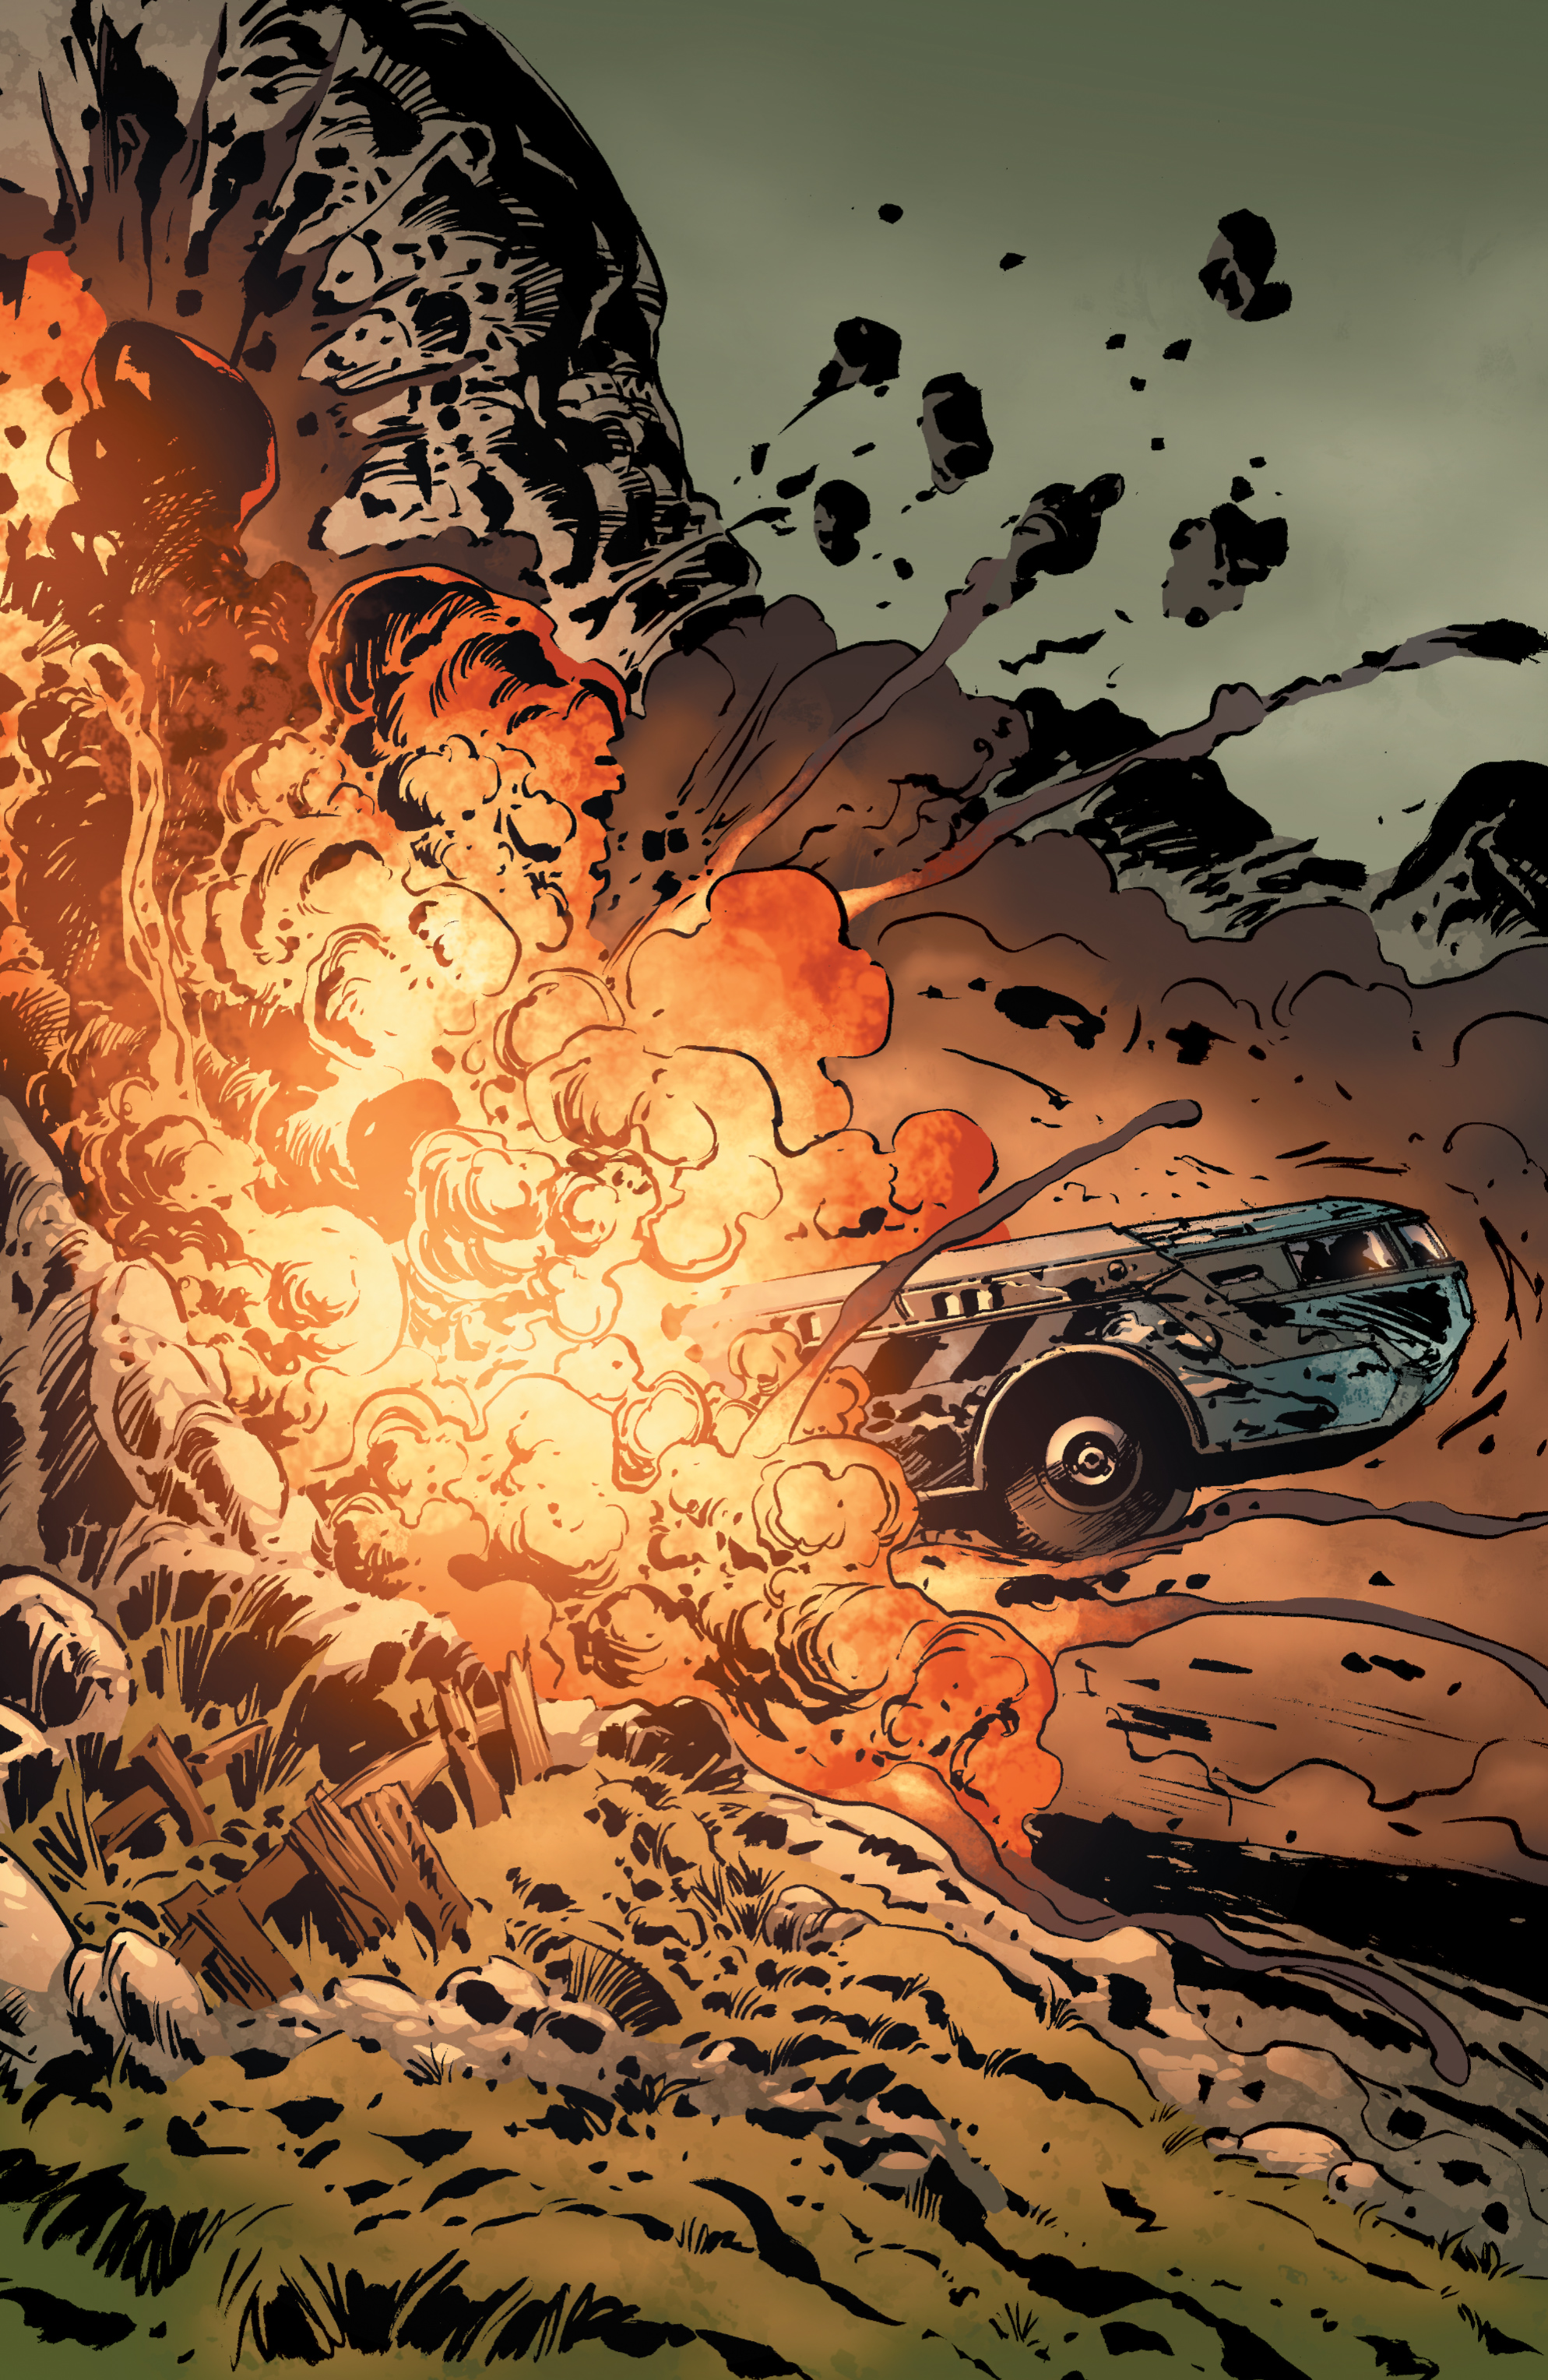 Read online Gears Of War comic -  Issue #13 - 19